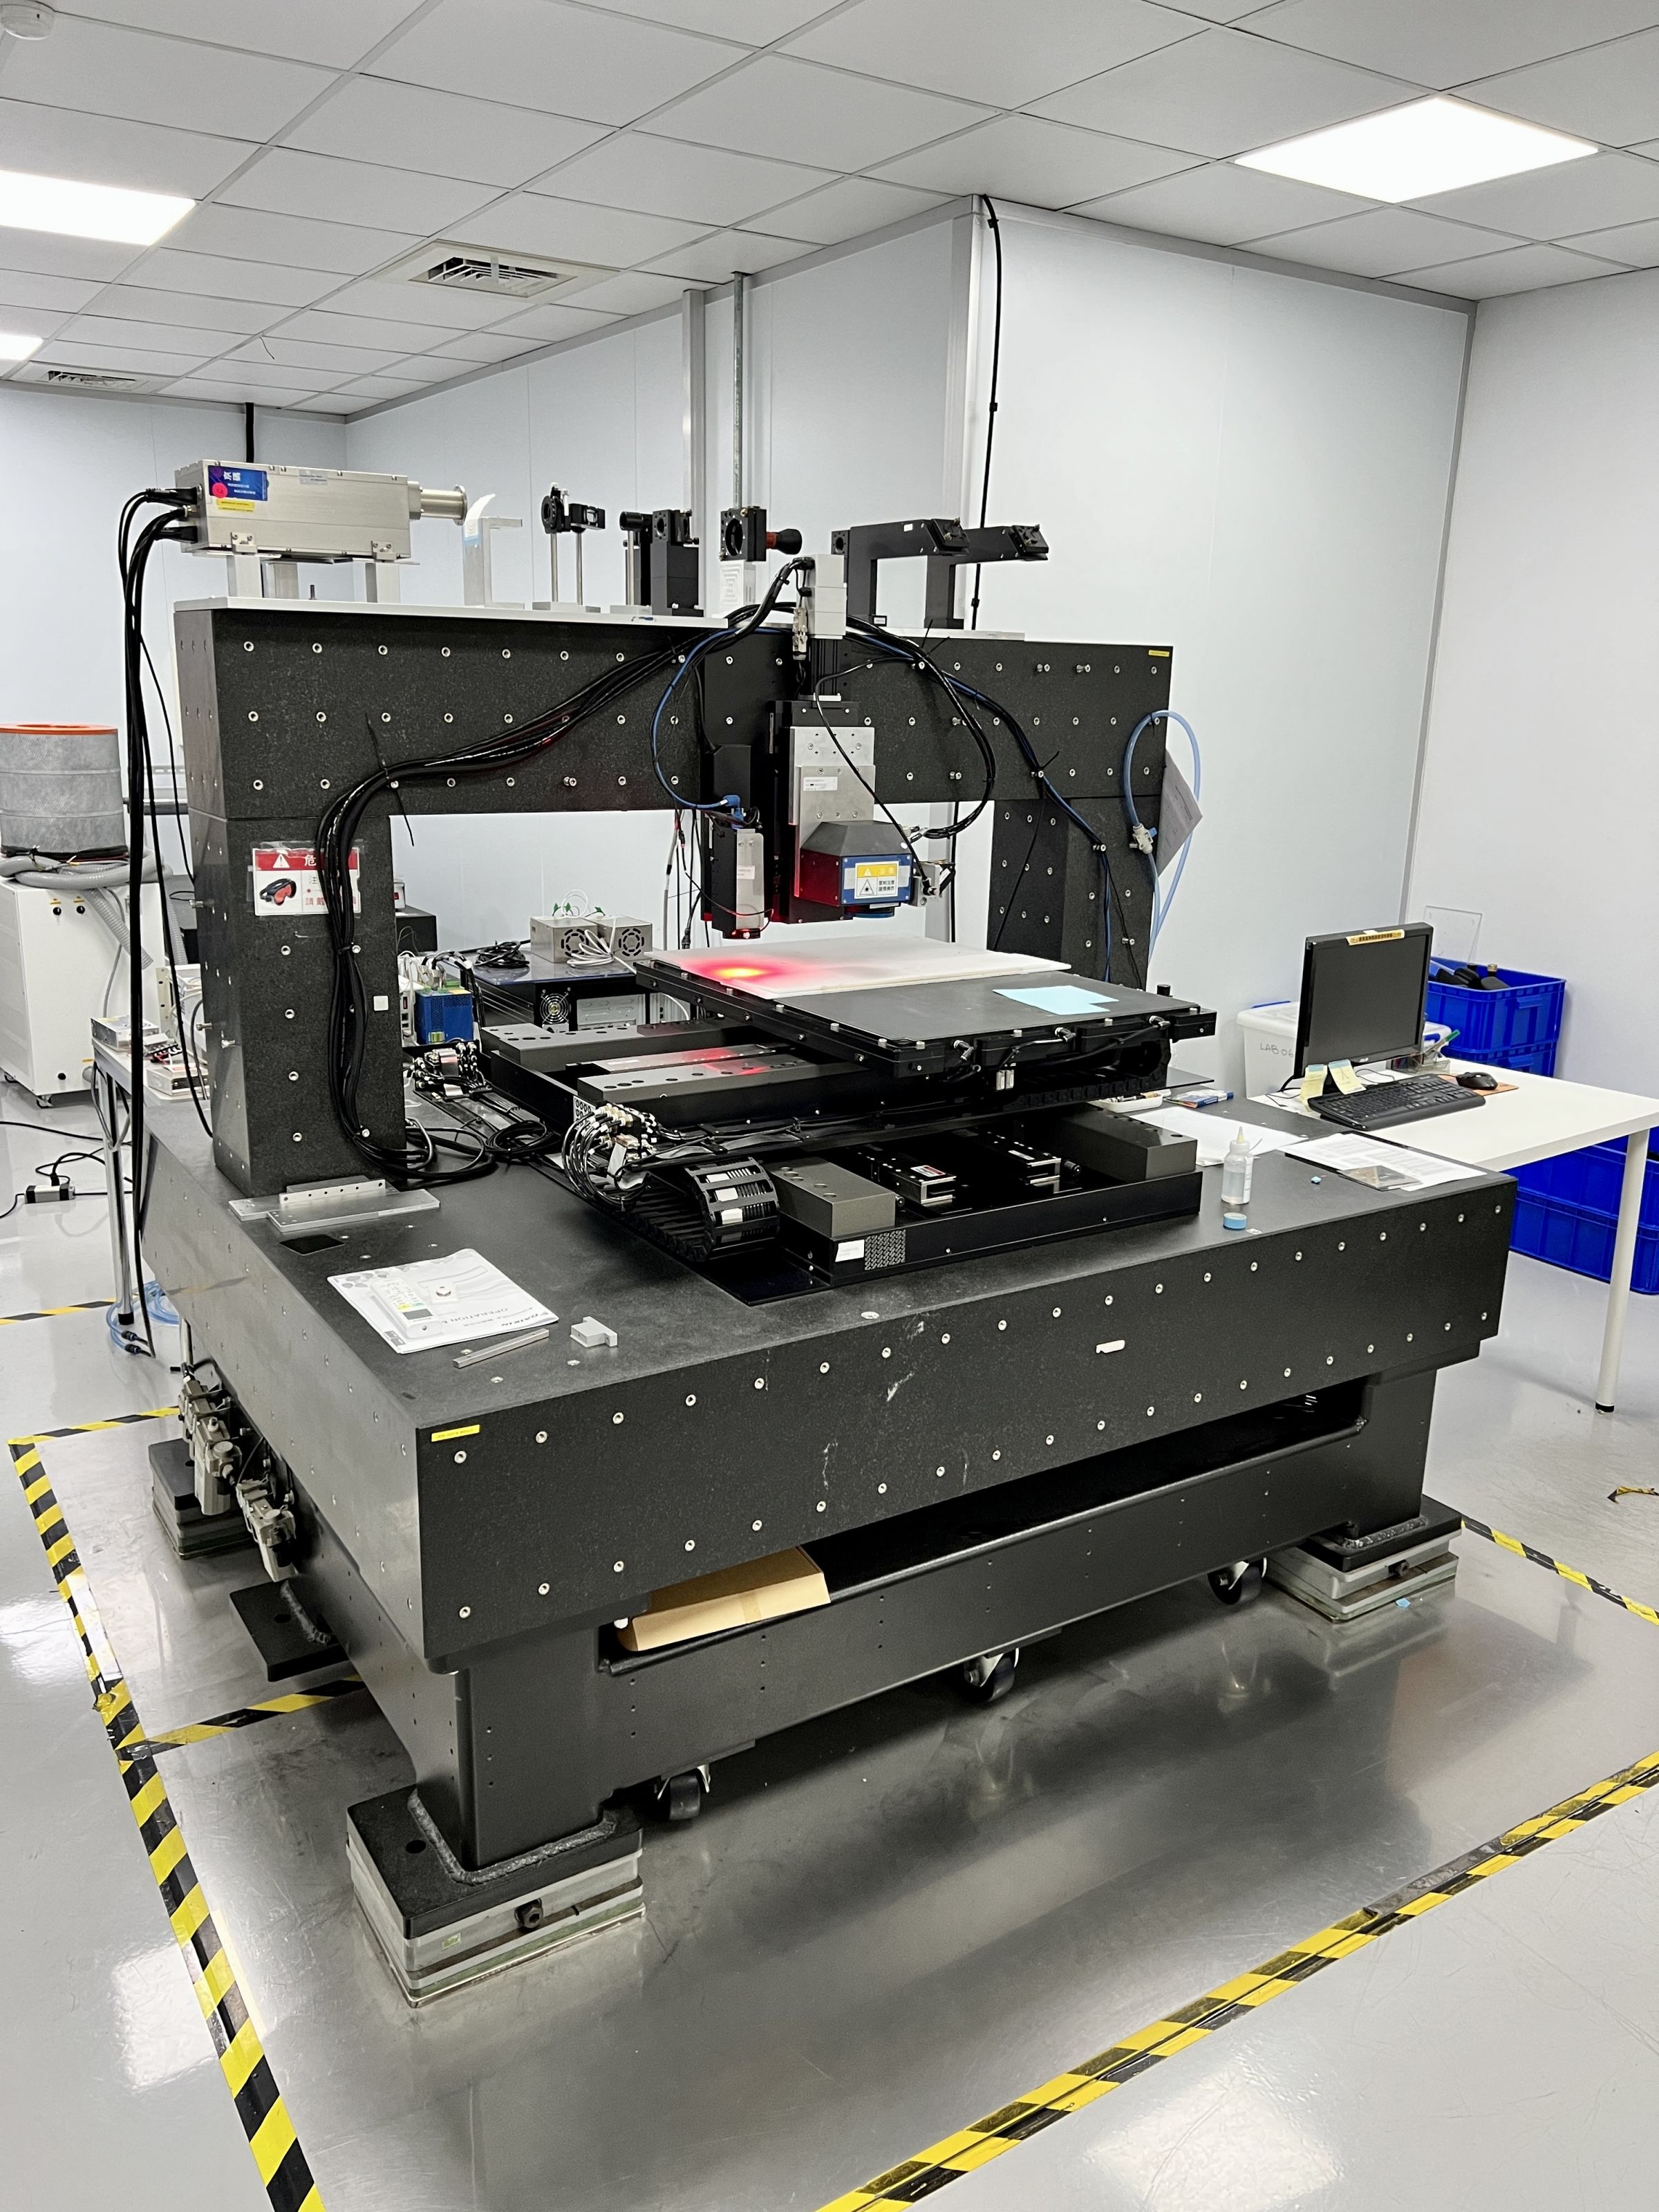 Những máy này có thể thực hiện việc khắc laser siêu nhỏ để tạo ra mạch cho các thành phần hoạt động và bị động hoặc xử lý vật liệu composite.